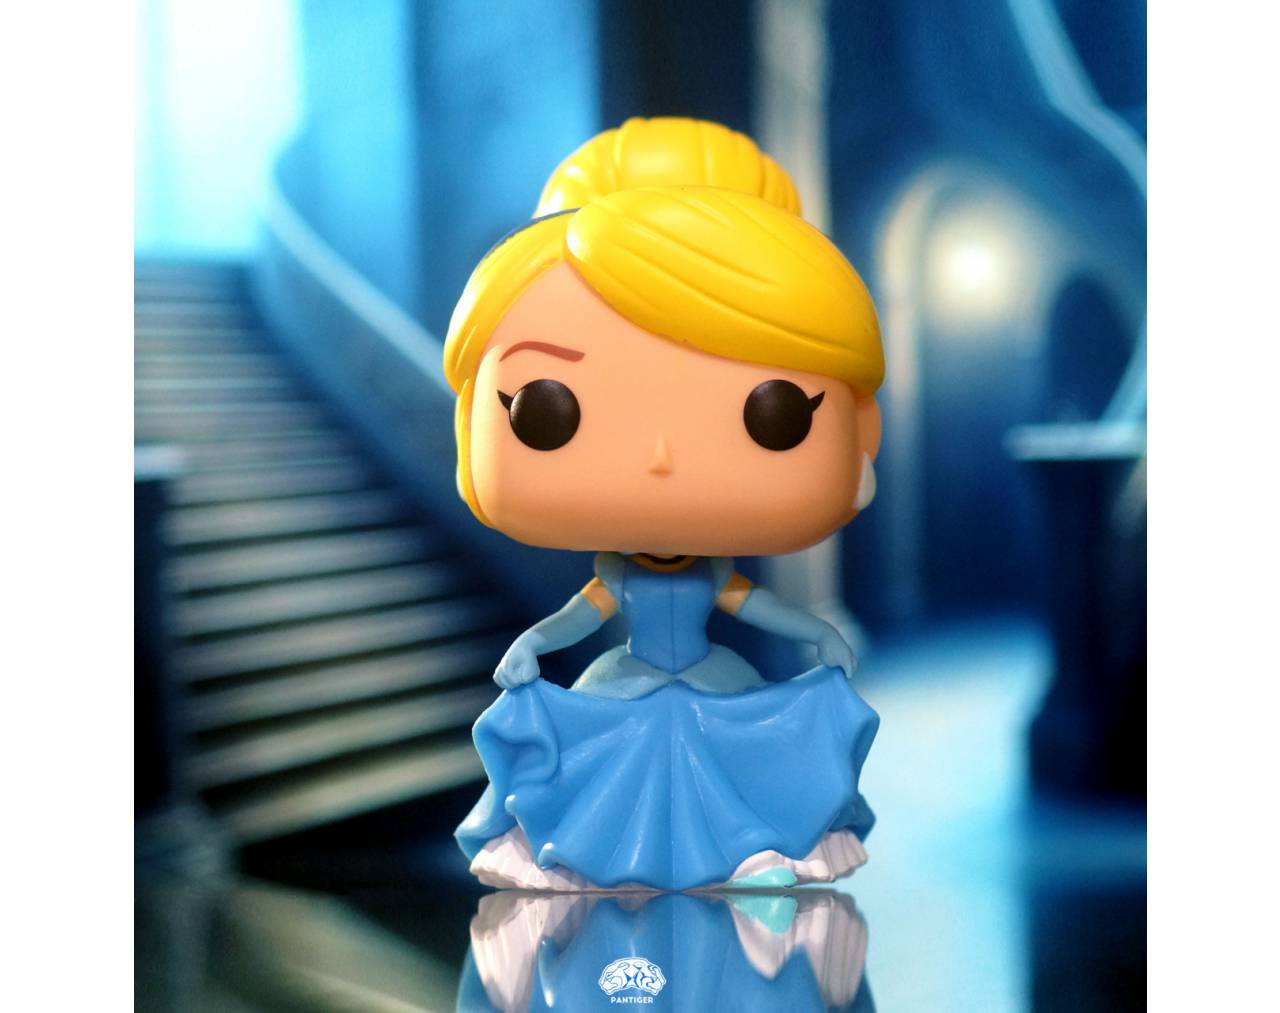 Cinderella (Dancing) - Disney Cinderella Pop! Vinyl